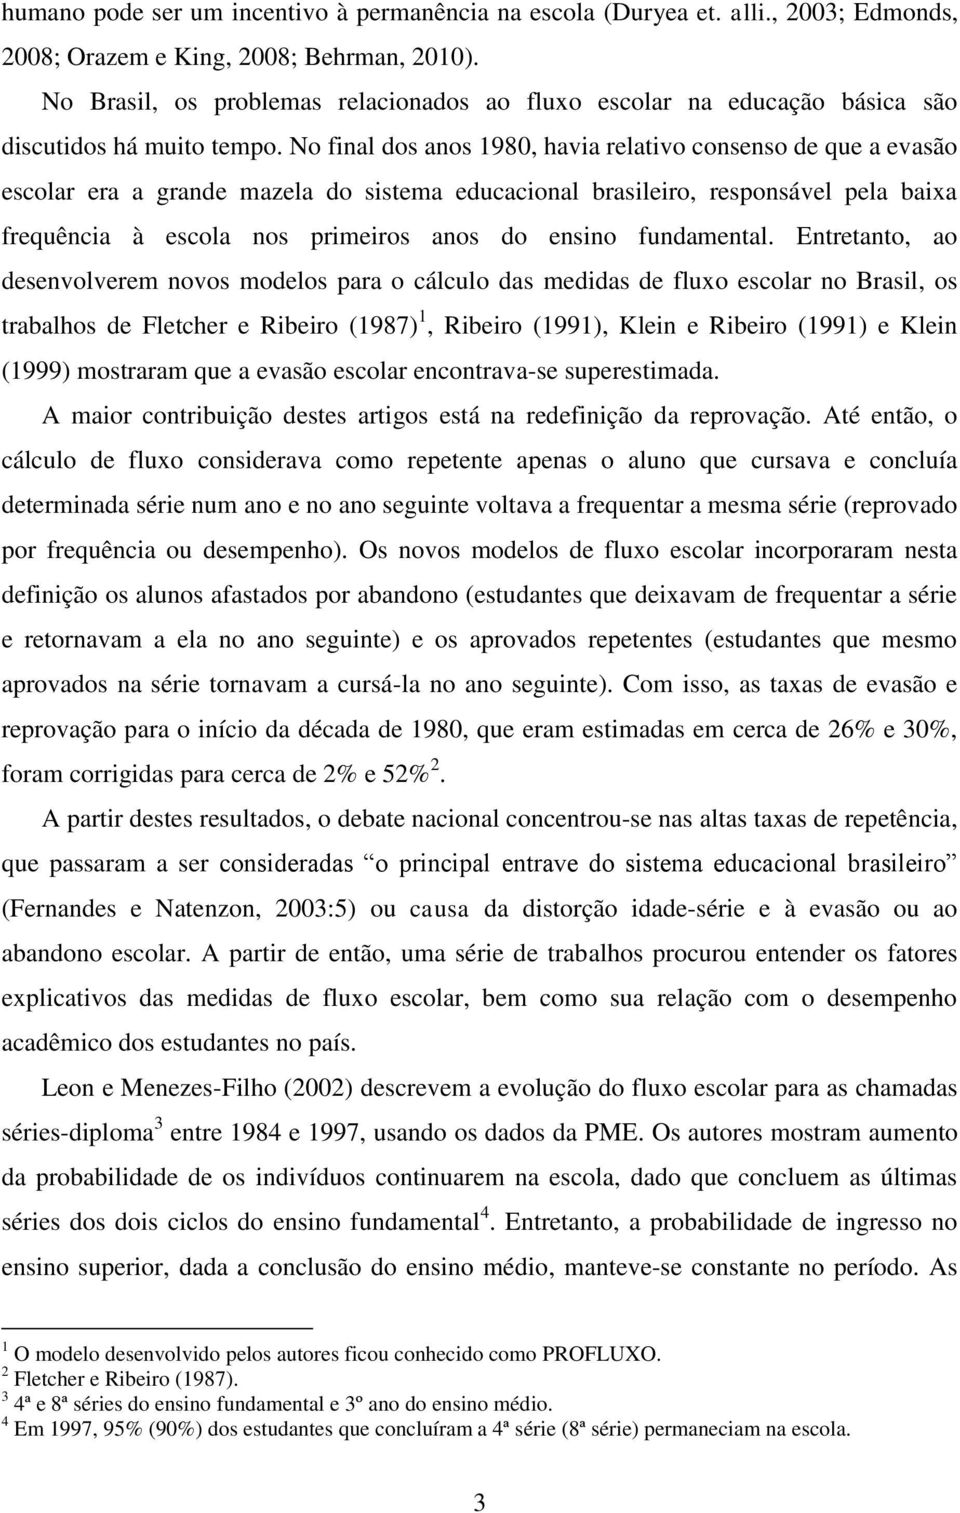 No final dos anos 1980, havia relativo consenso de que a evasão escolar era a grande mazela do sistema educacional brasileiro, responsável pela baixa frequência à escola nos primeiros anos do ensino